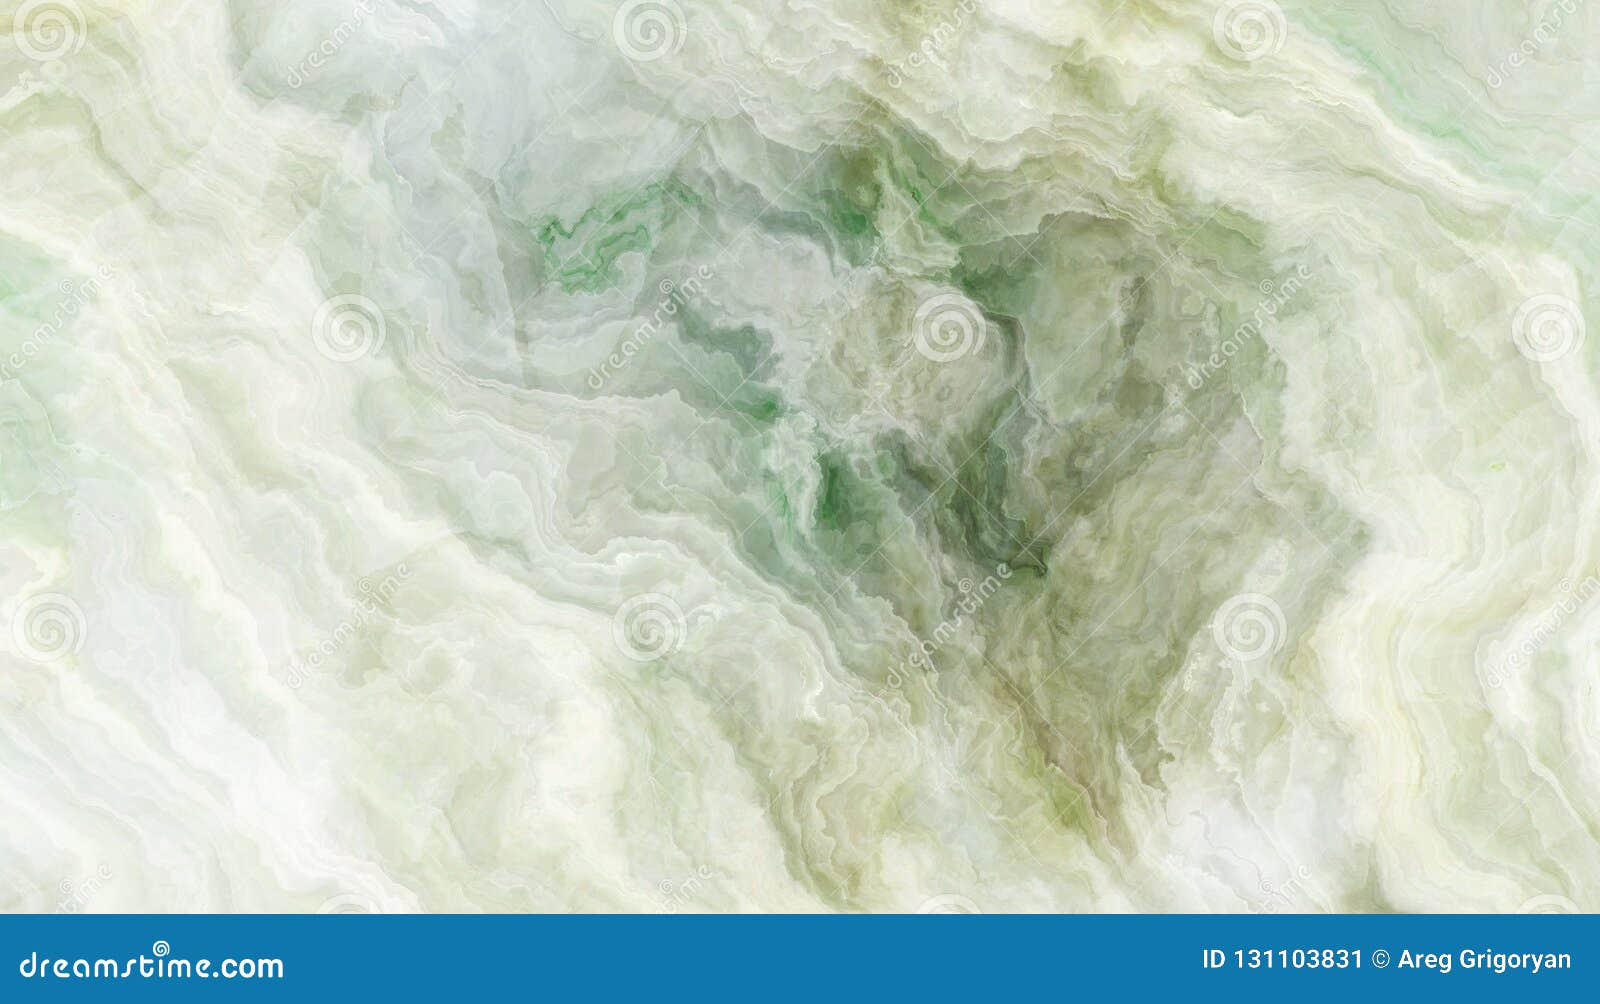 green onyx tile texture